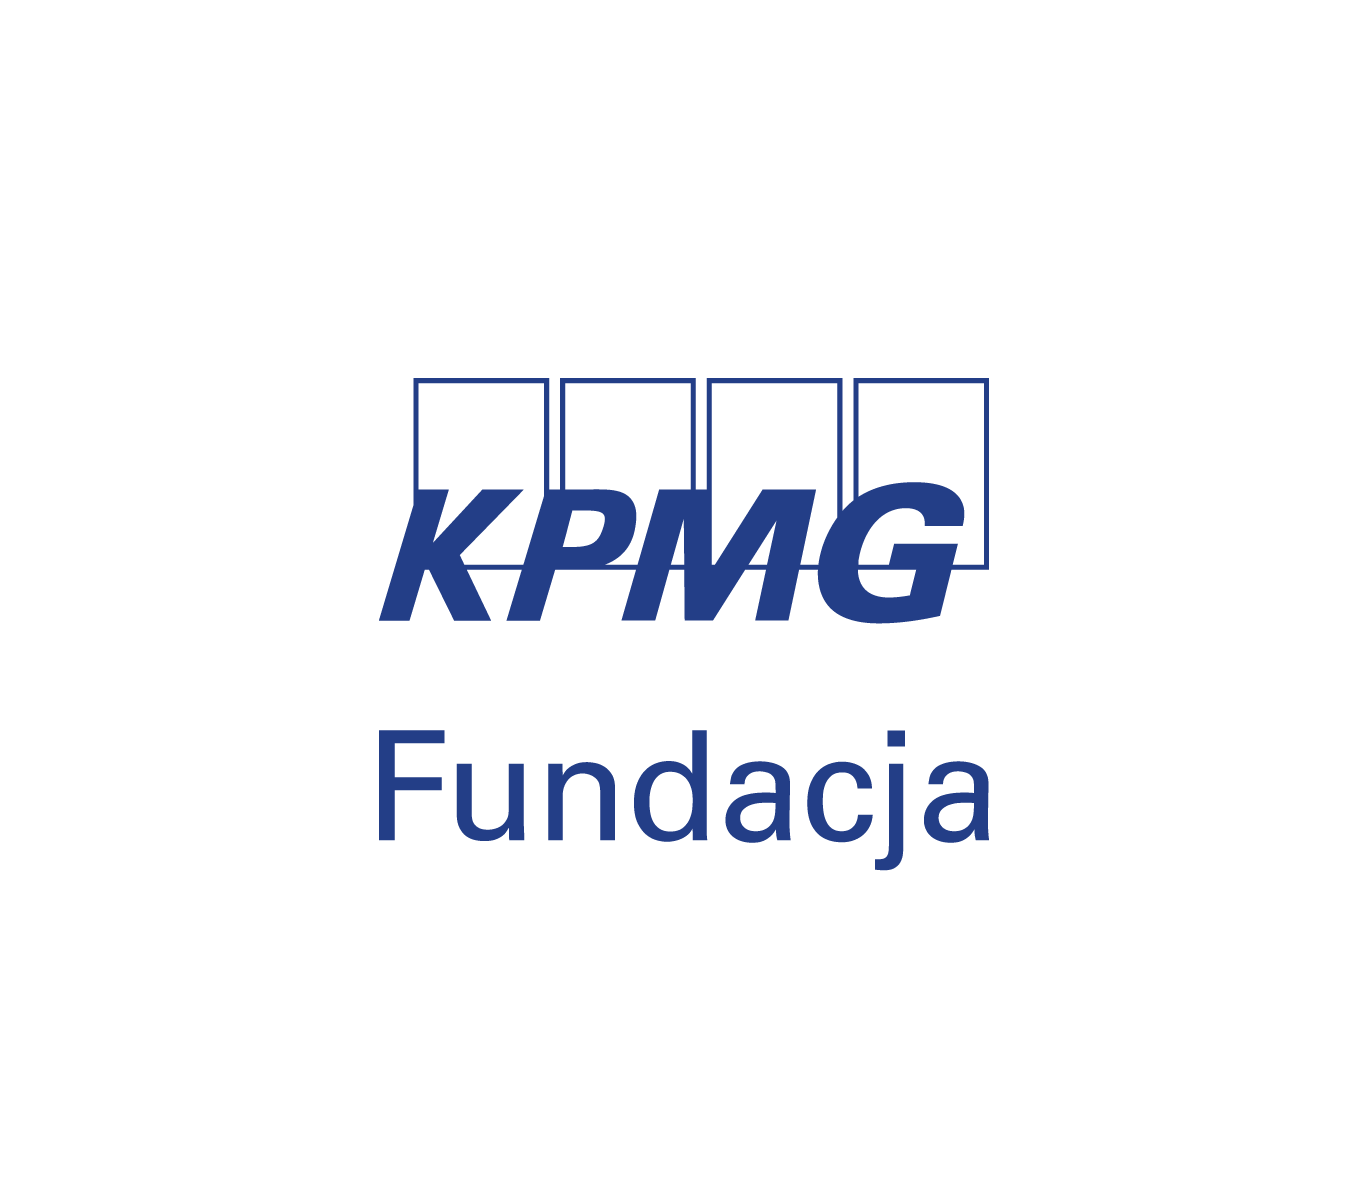 Fundacja KPMG w Polsce